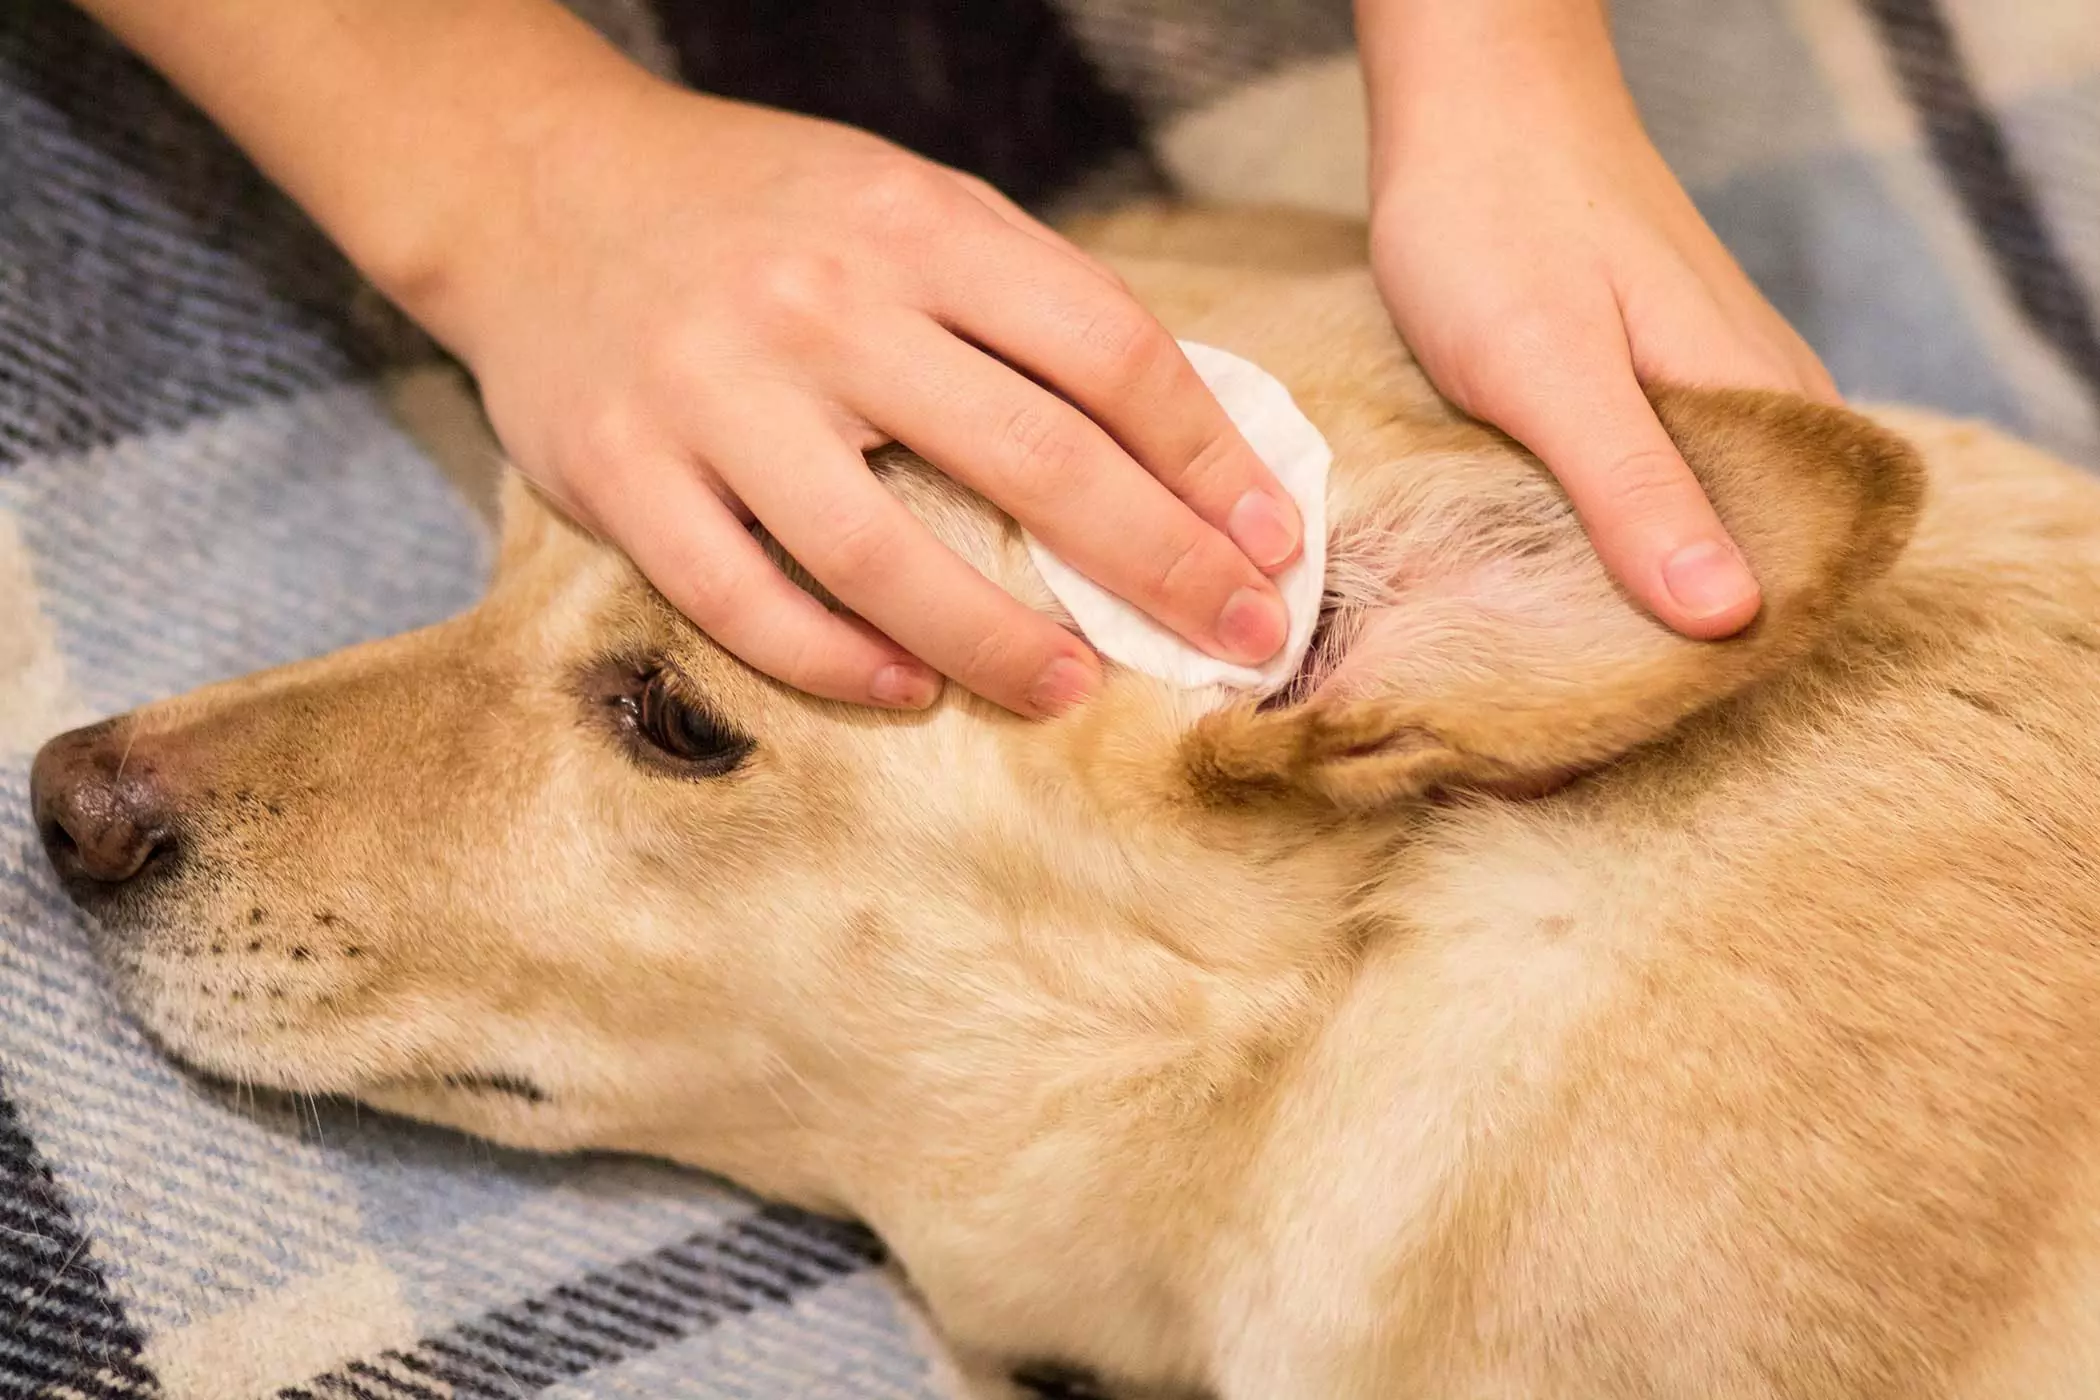 Come pulire le orecchie del cane? Come pulire correttamente il condotto uditivo del cane?